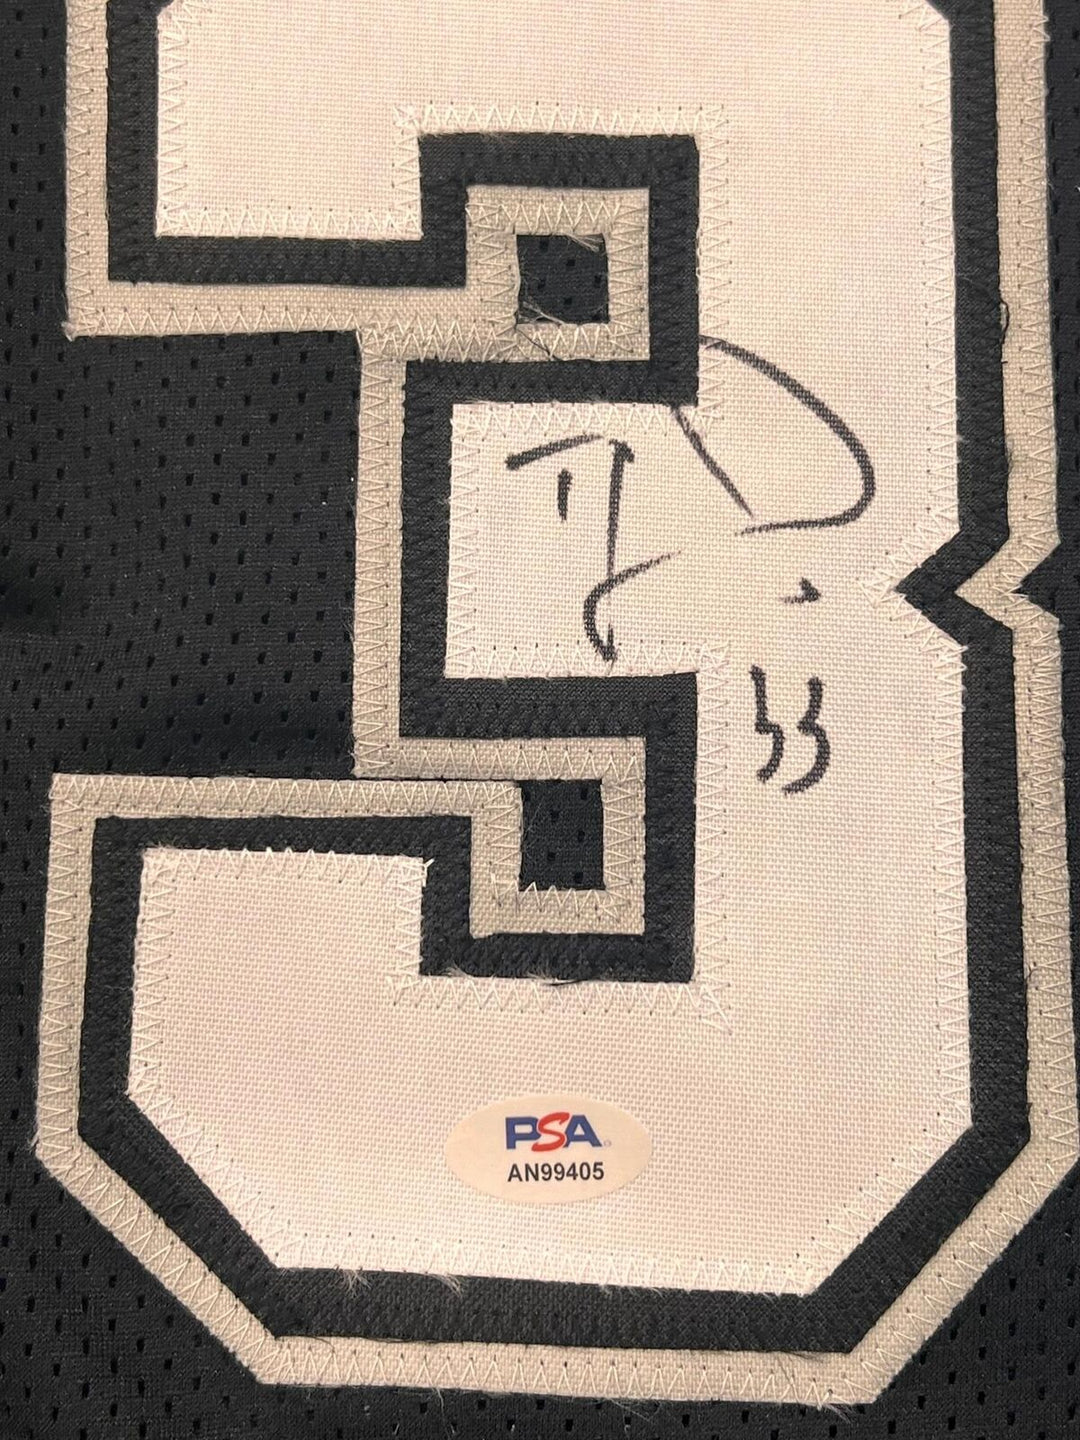 TRE JONES signed jersey PSA/DNA San Antonio Spurs Autographed Image 2